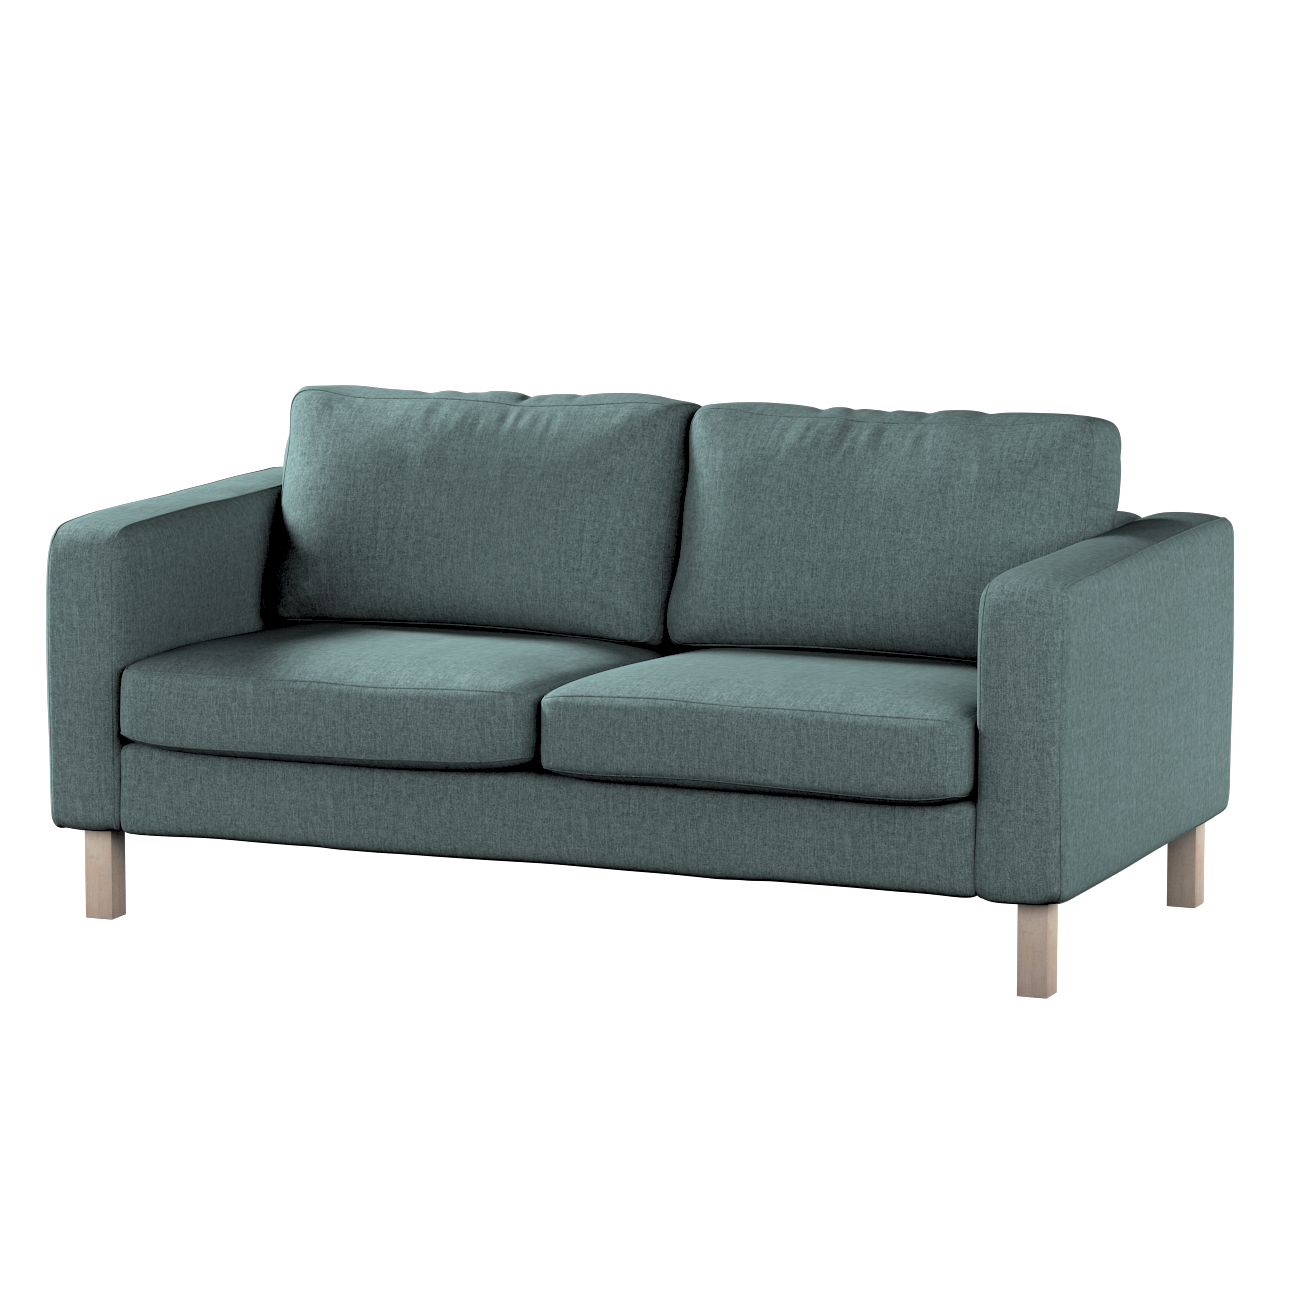 Bezug für Karlstad 2-Sitzer Sofa nicht ausklappbar, grau- blau, Sofahusse, günstig online kaufen